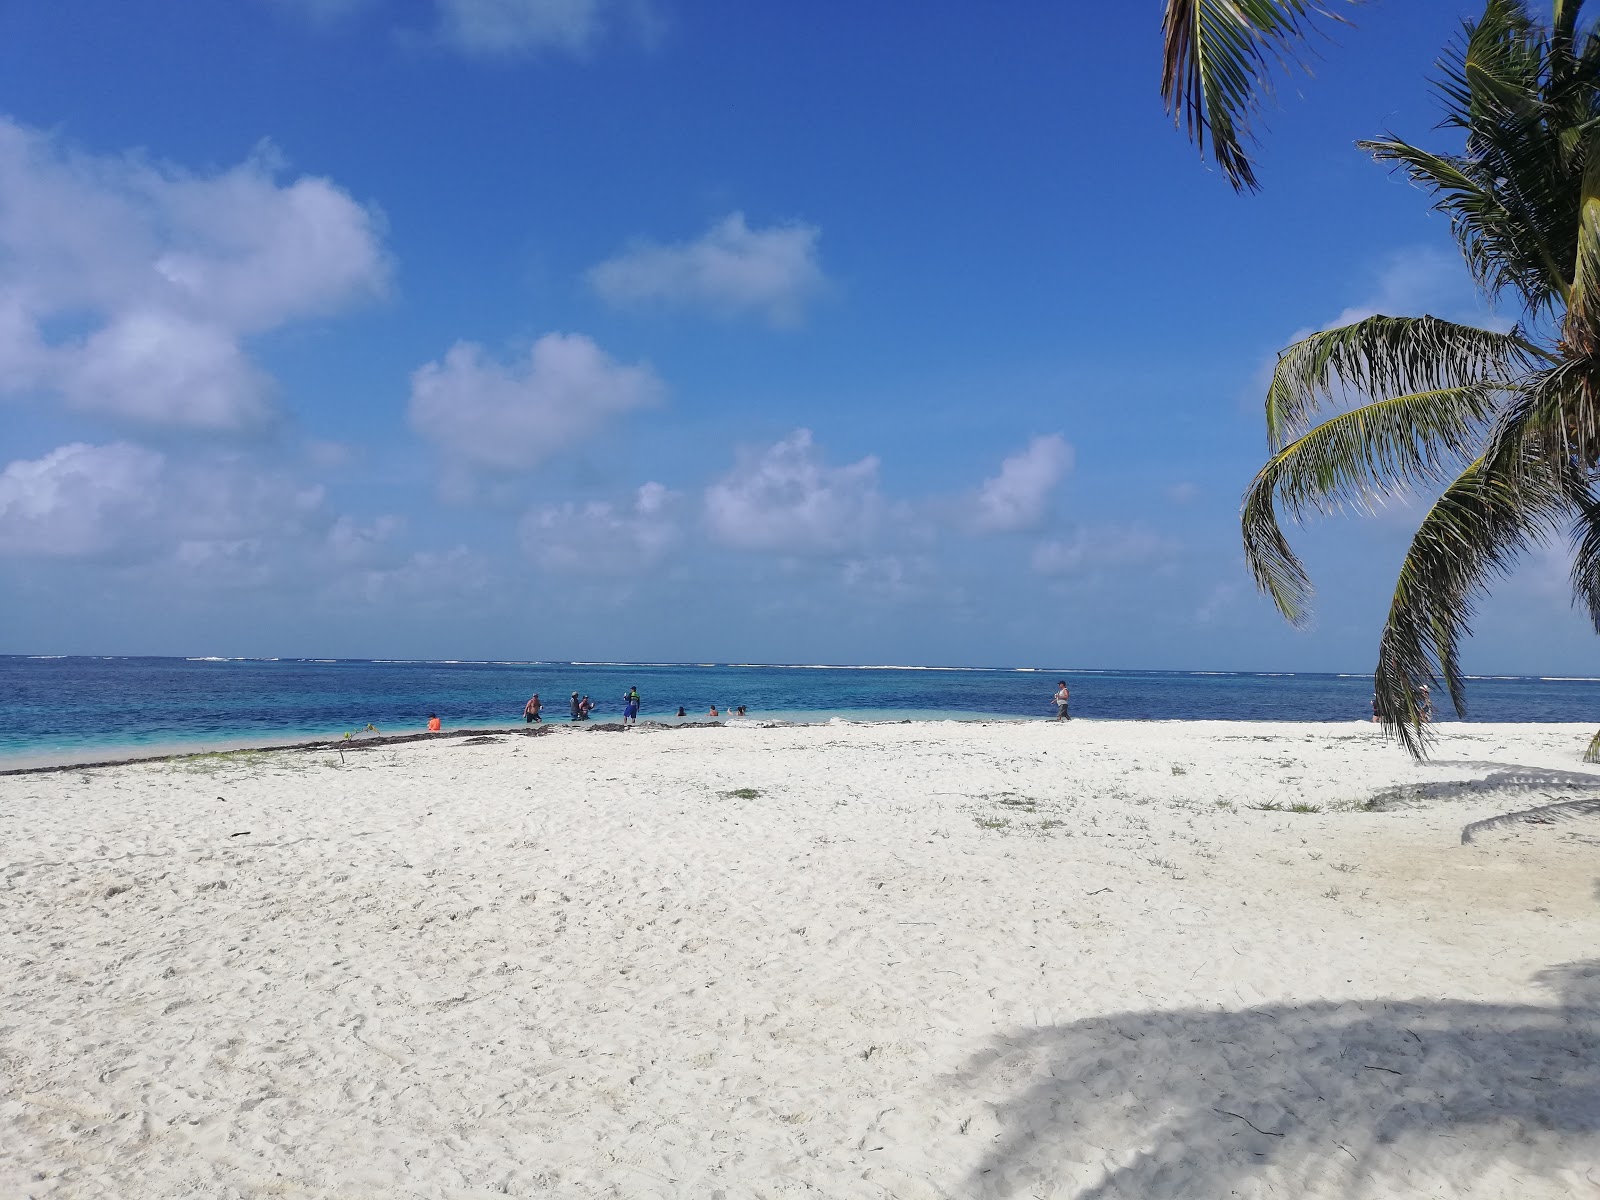 Fotografija Winfli jadranje na plaži Sailtrip nahaja se v naravnem okolju